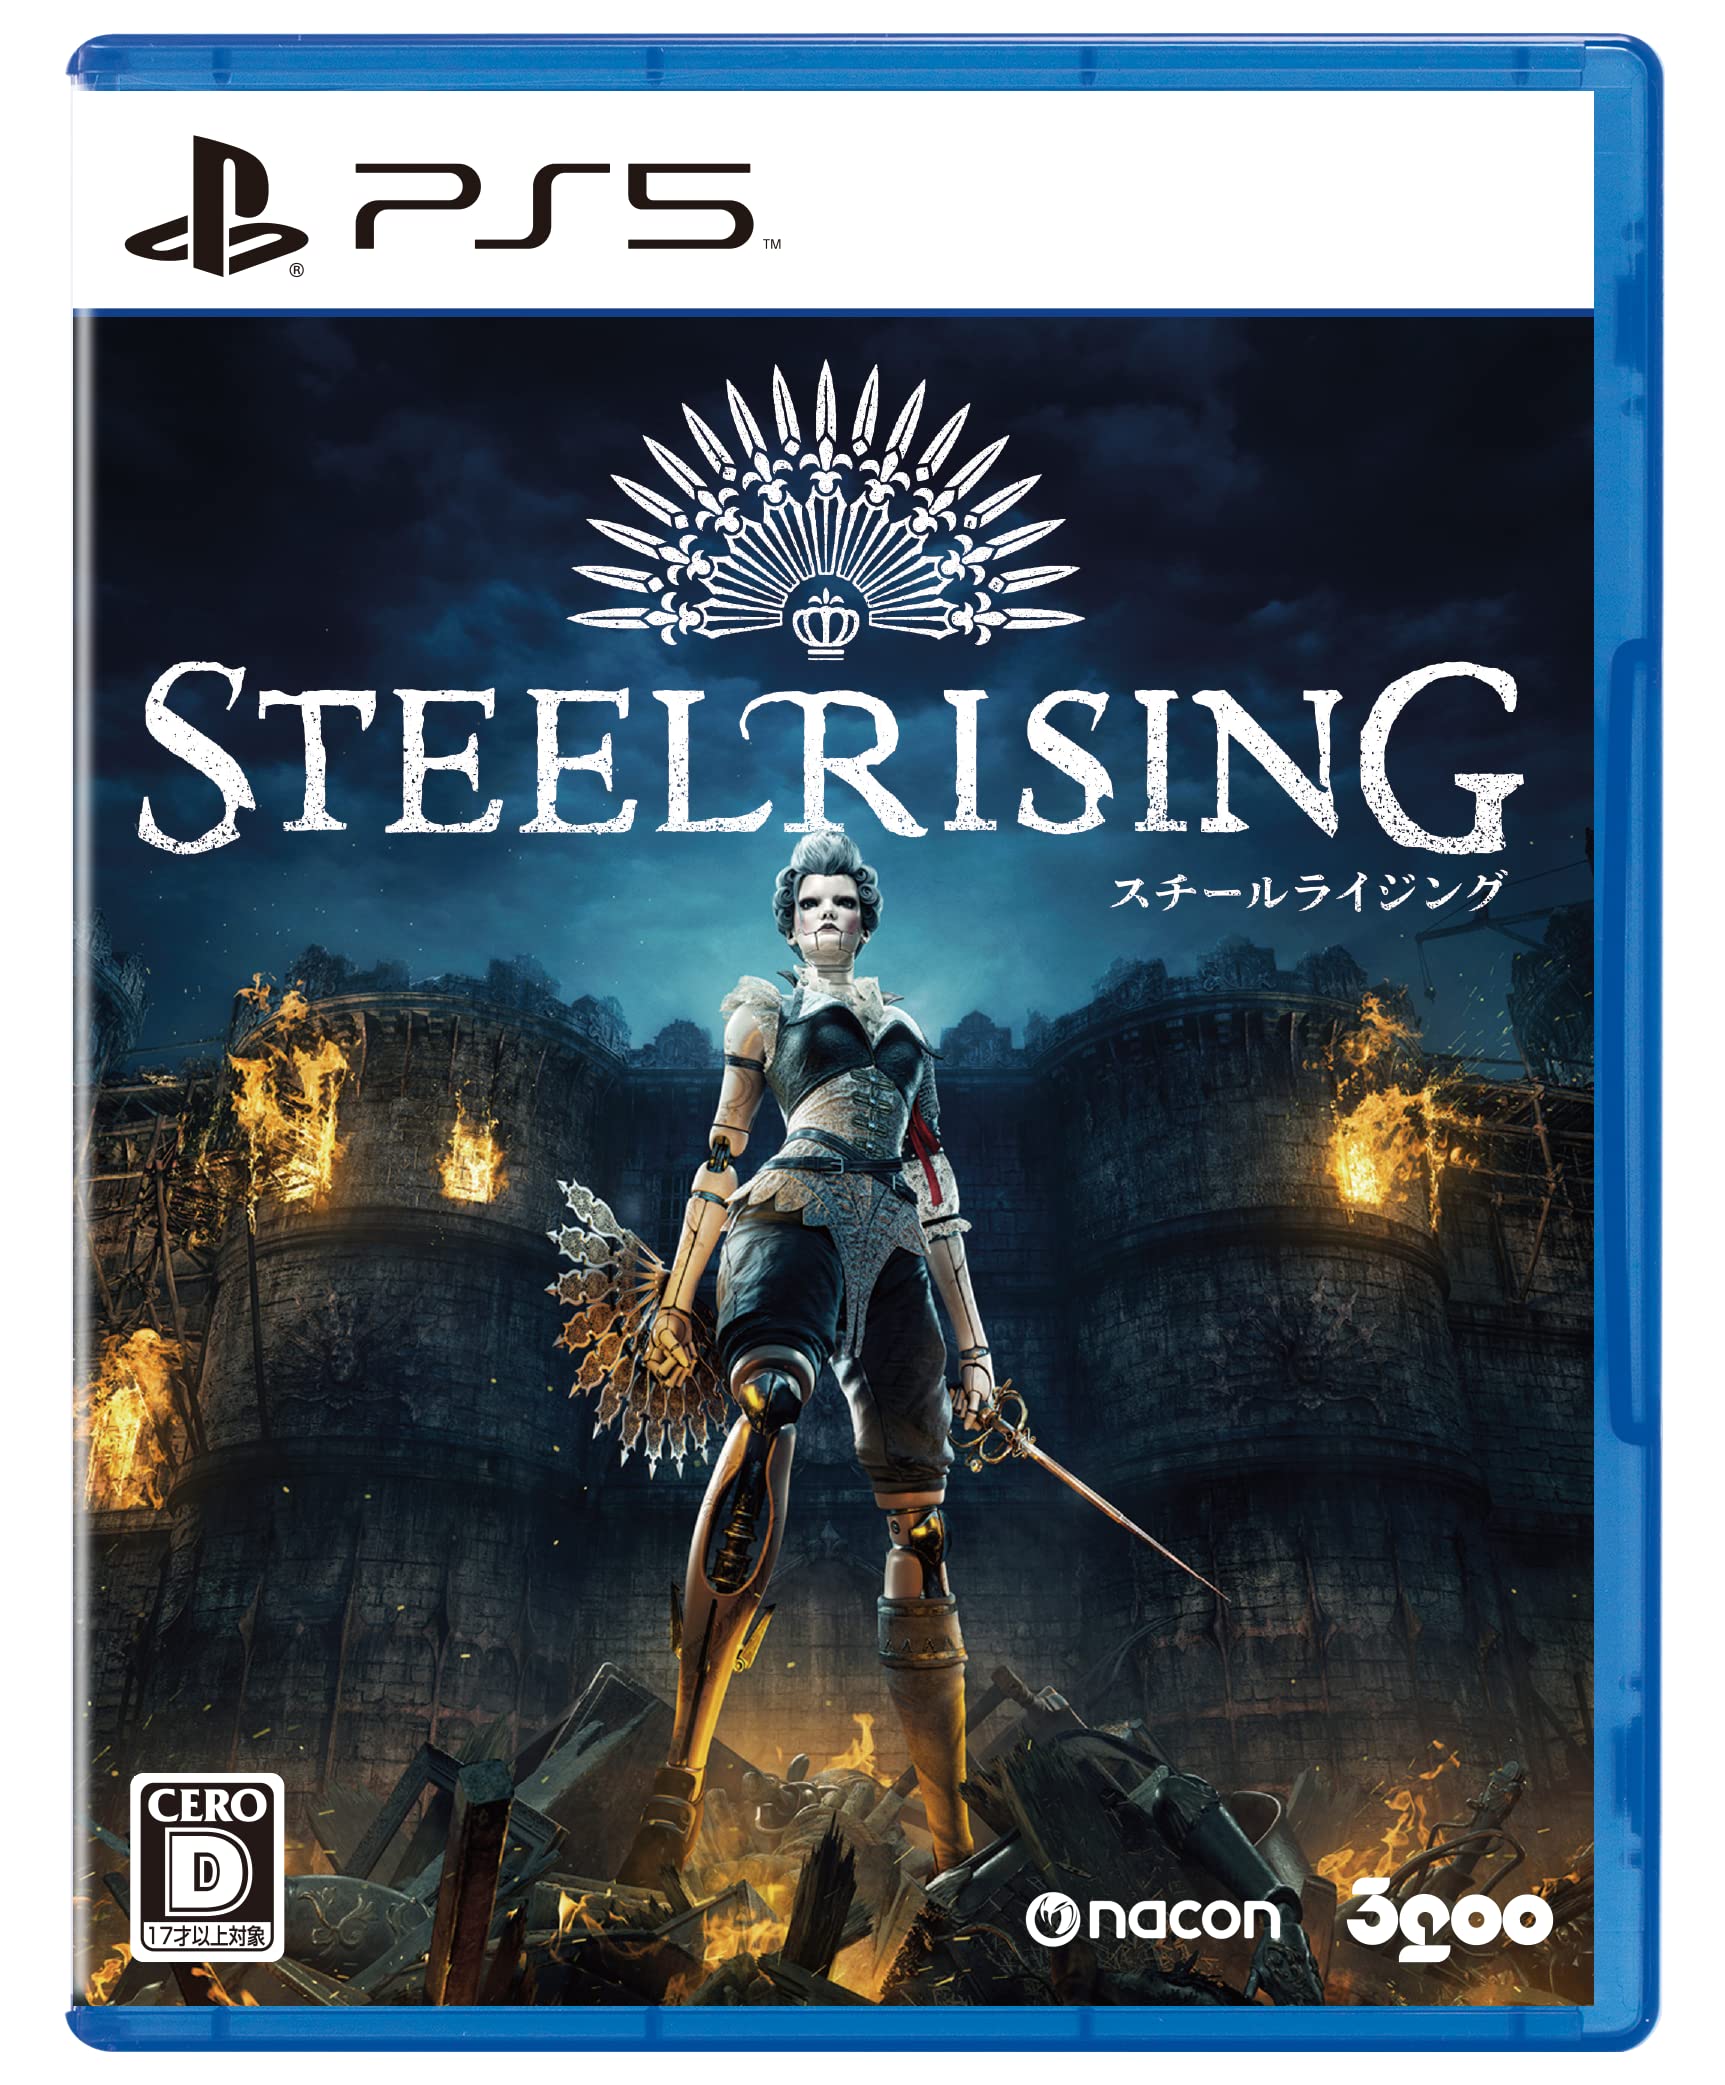 Steelrising(スチールライジング) -PS5 オリジナルタンブラー2個セット 同梱 デジタル壁紙セット ※有効期限切れのため入手不可 使用不可